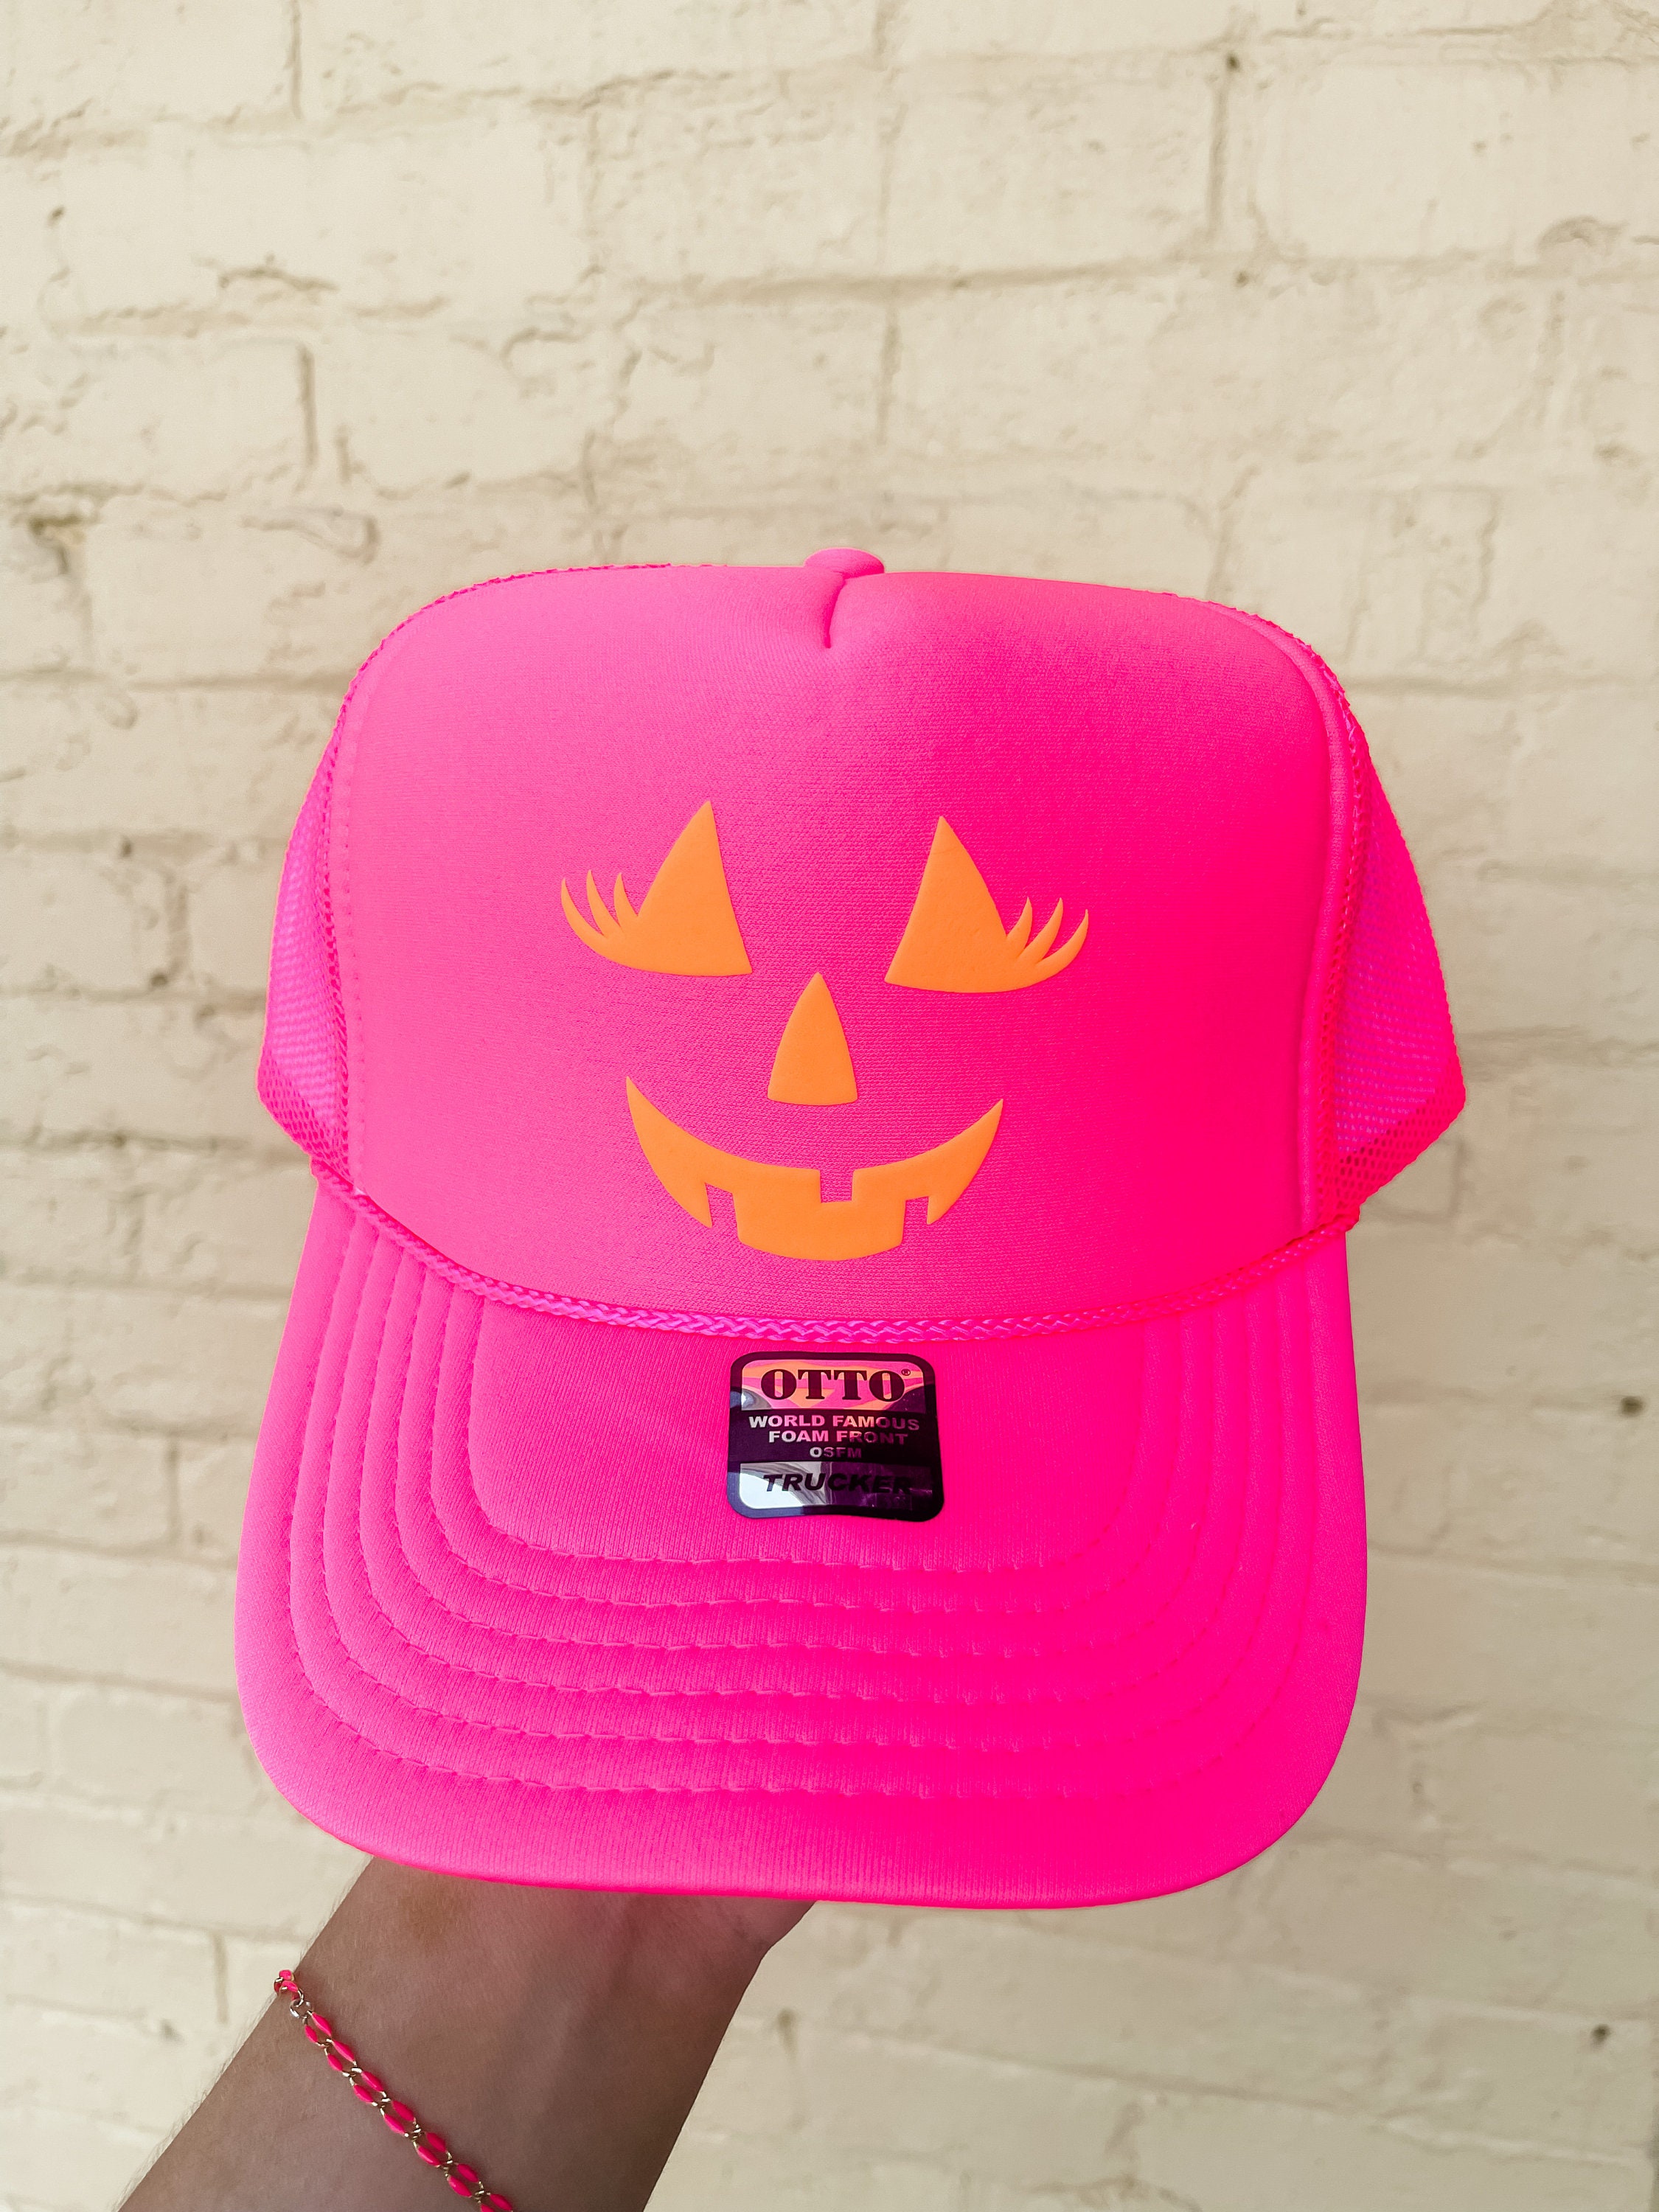 Fancy Lids LOVE Trucker Hat (All Colors)